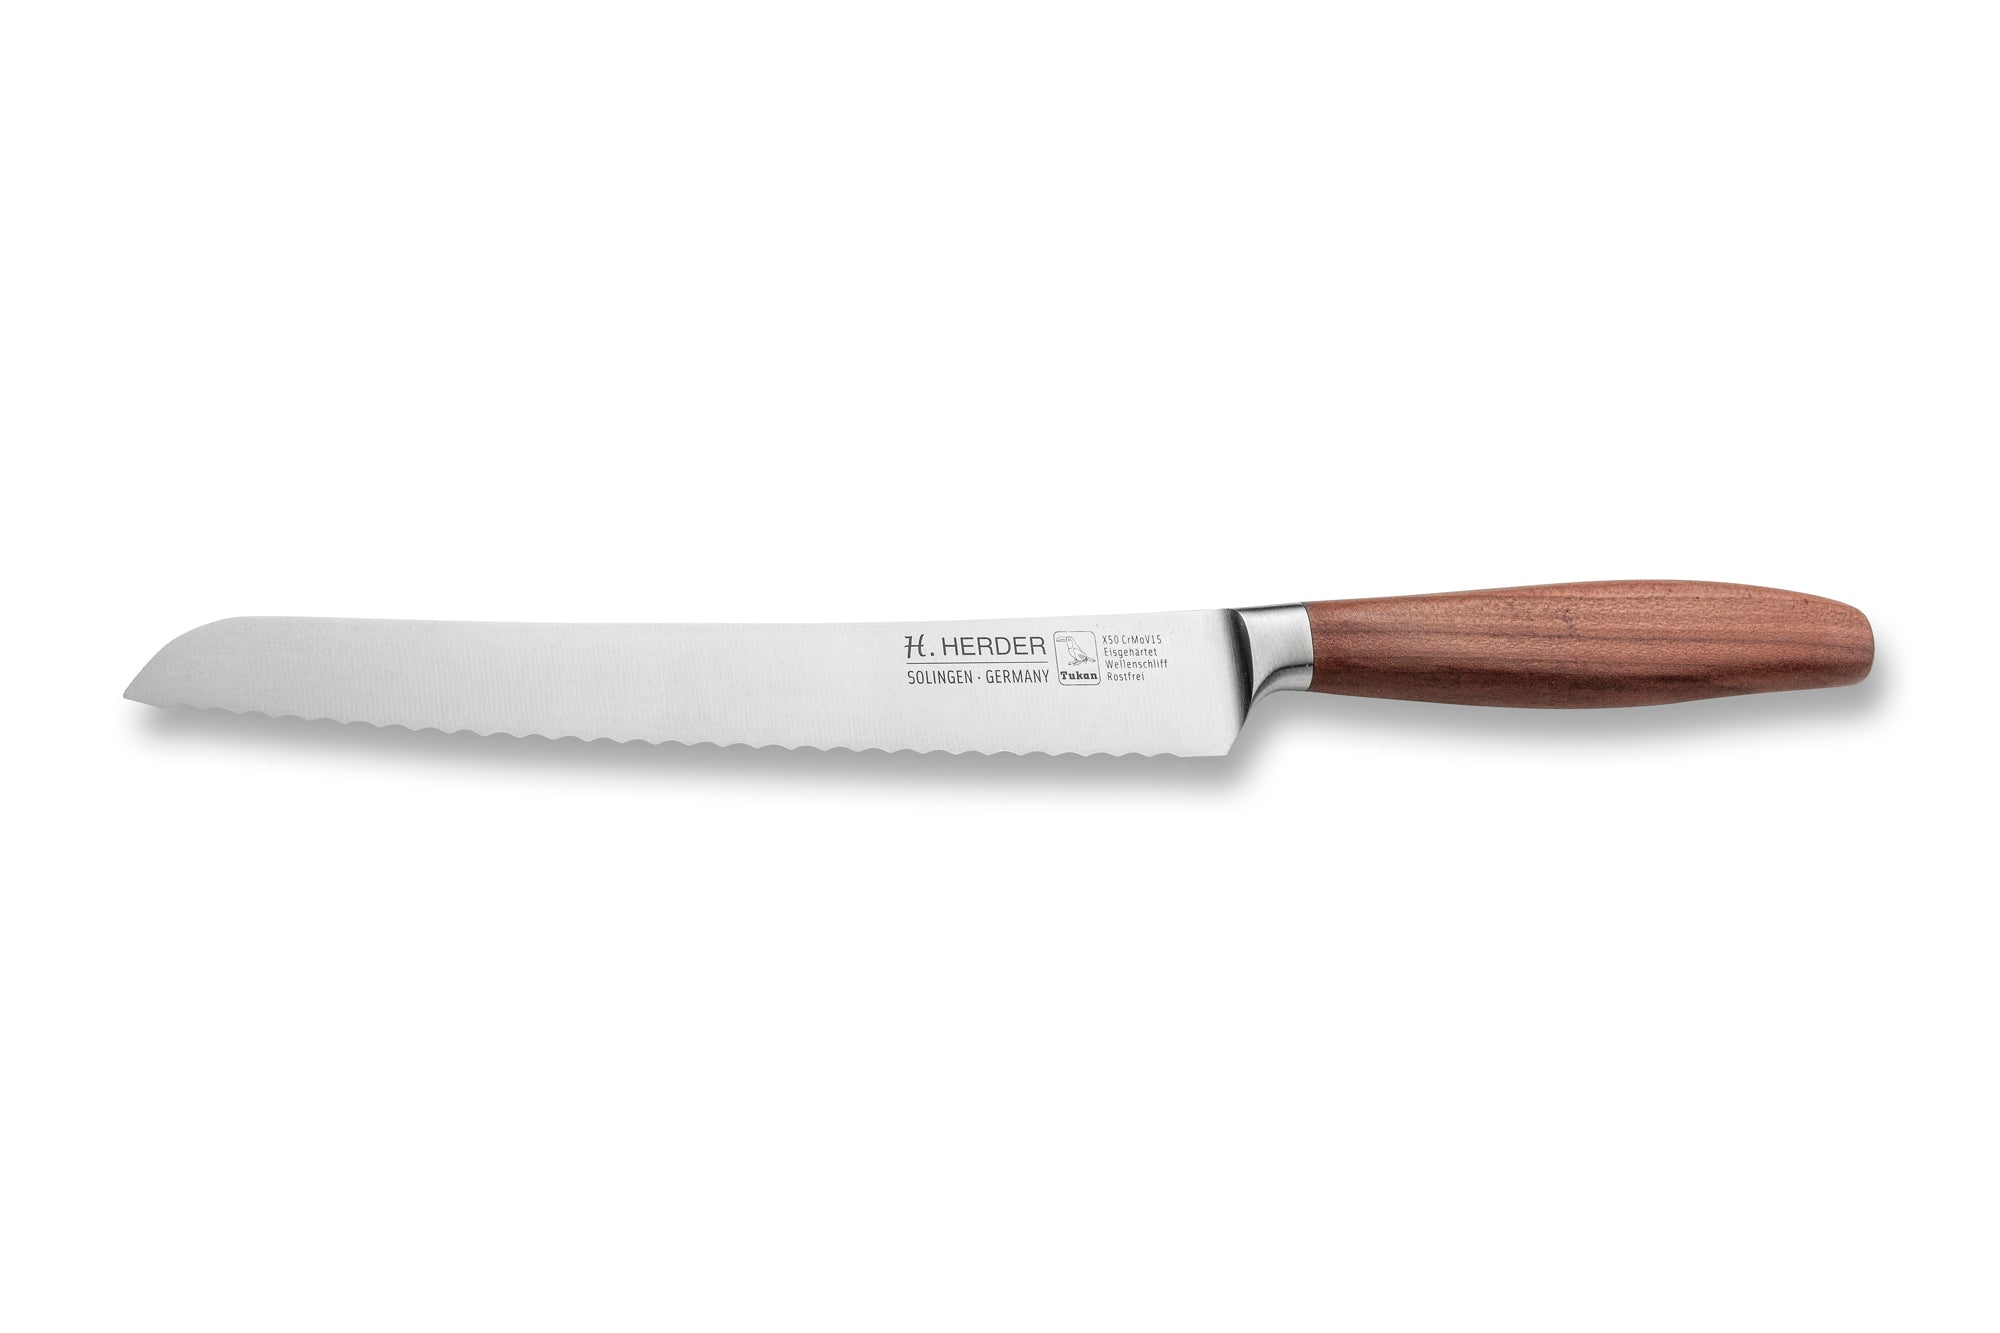 Couteau à pain Eterno, bois de prunier, longueur de lame 22cm, forgé, lame crantée